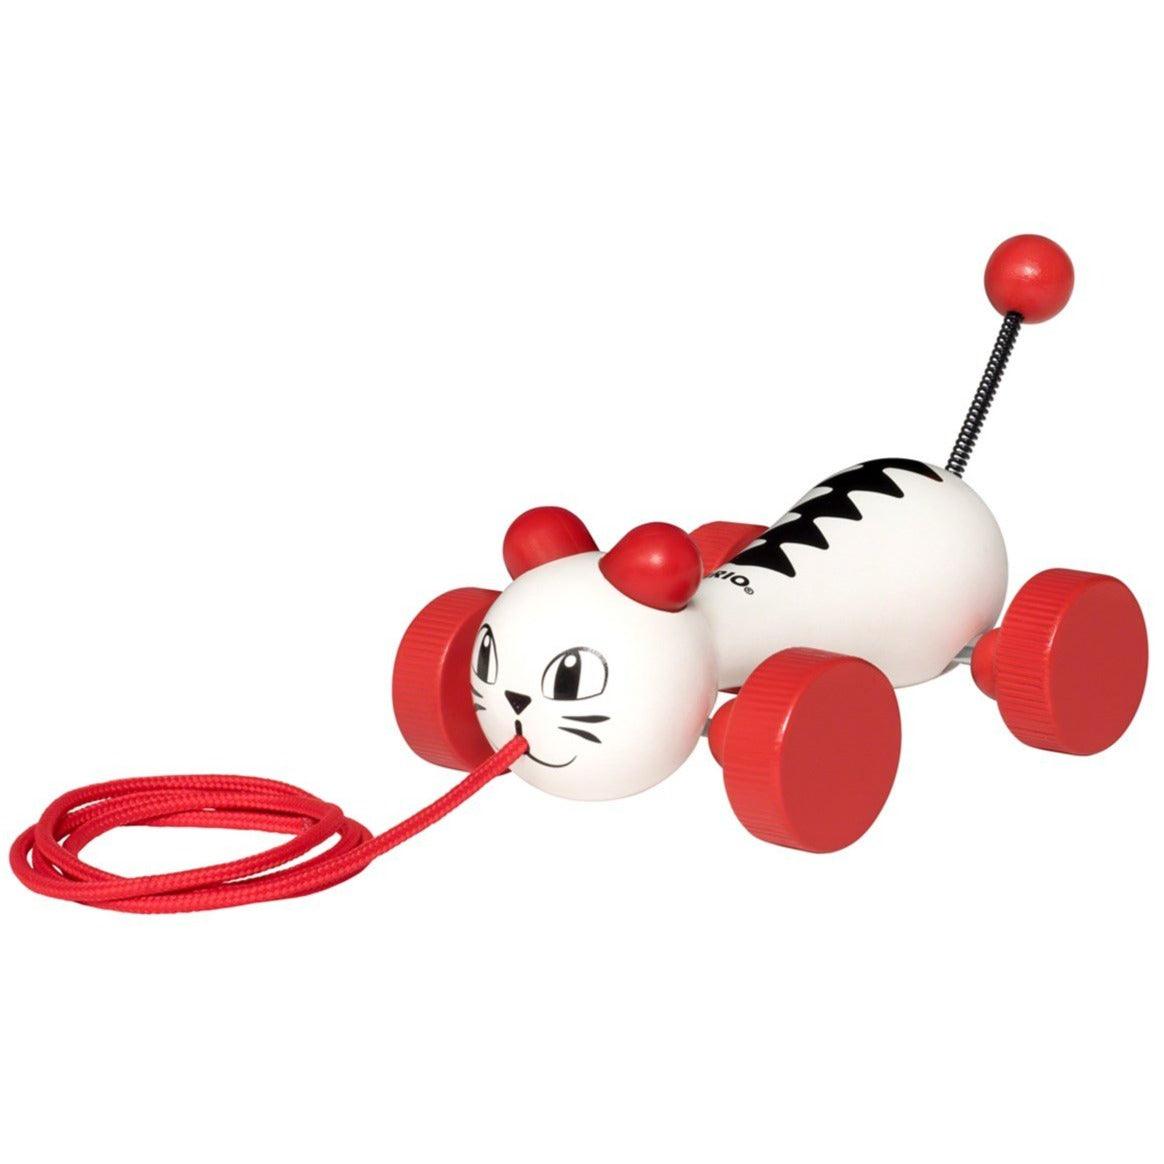 BRIO: „White Cat Pull“ žaislas